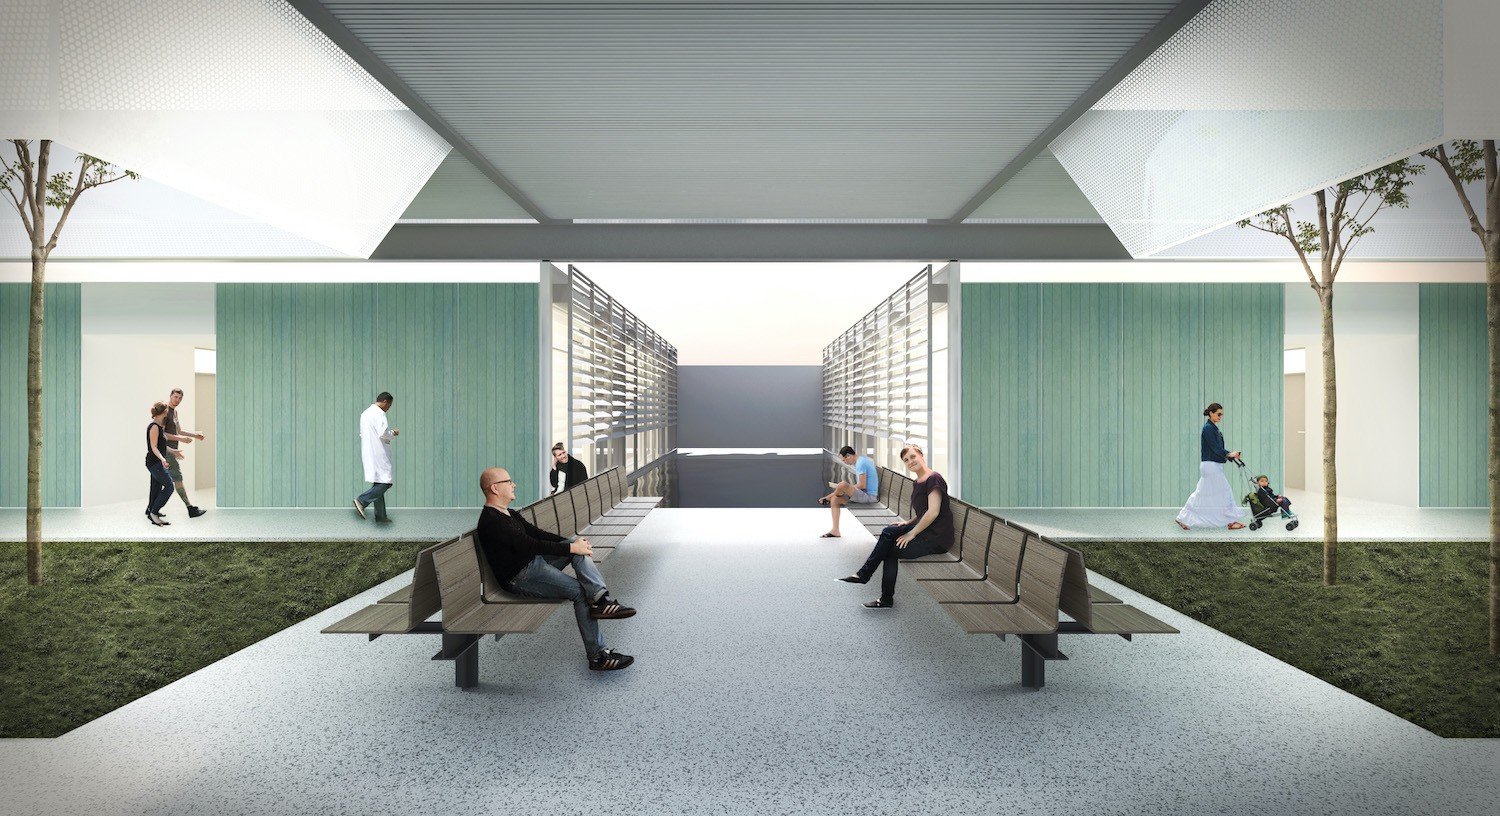 A proposta do Hiperstudio busca desassociar espaços herméticos de construções hospitalares (Foto: Divulgação / Hiperstudio)